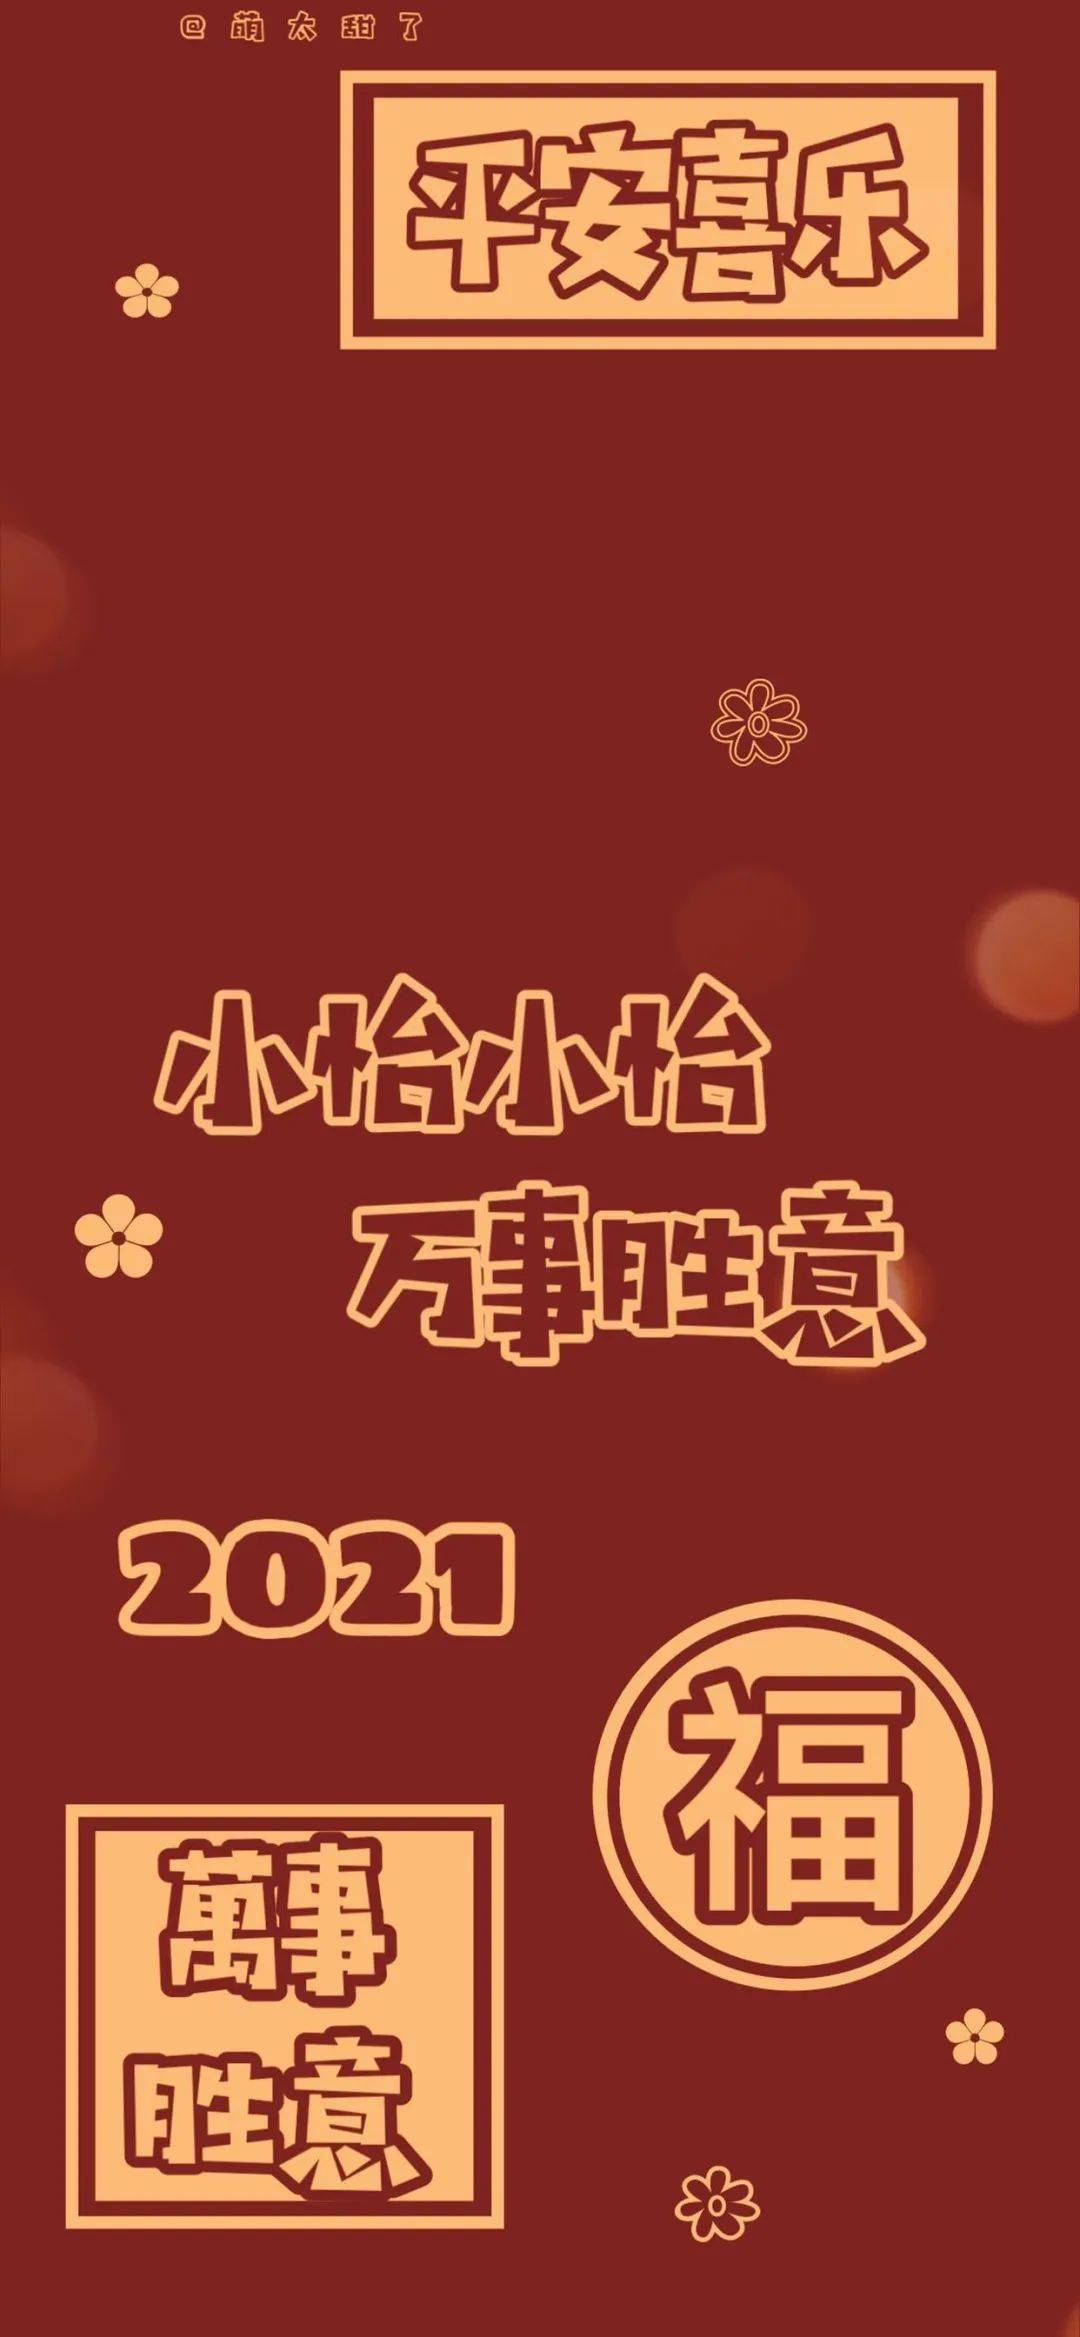 小赵小赵2021文字壁纸图片